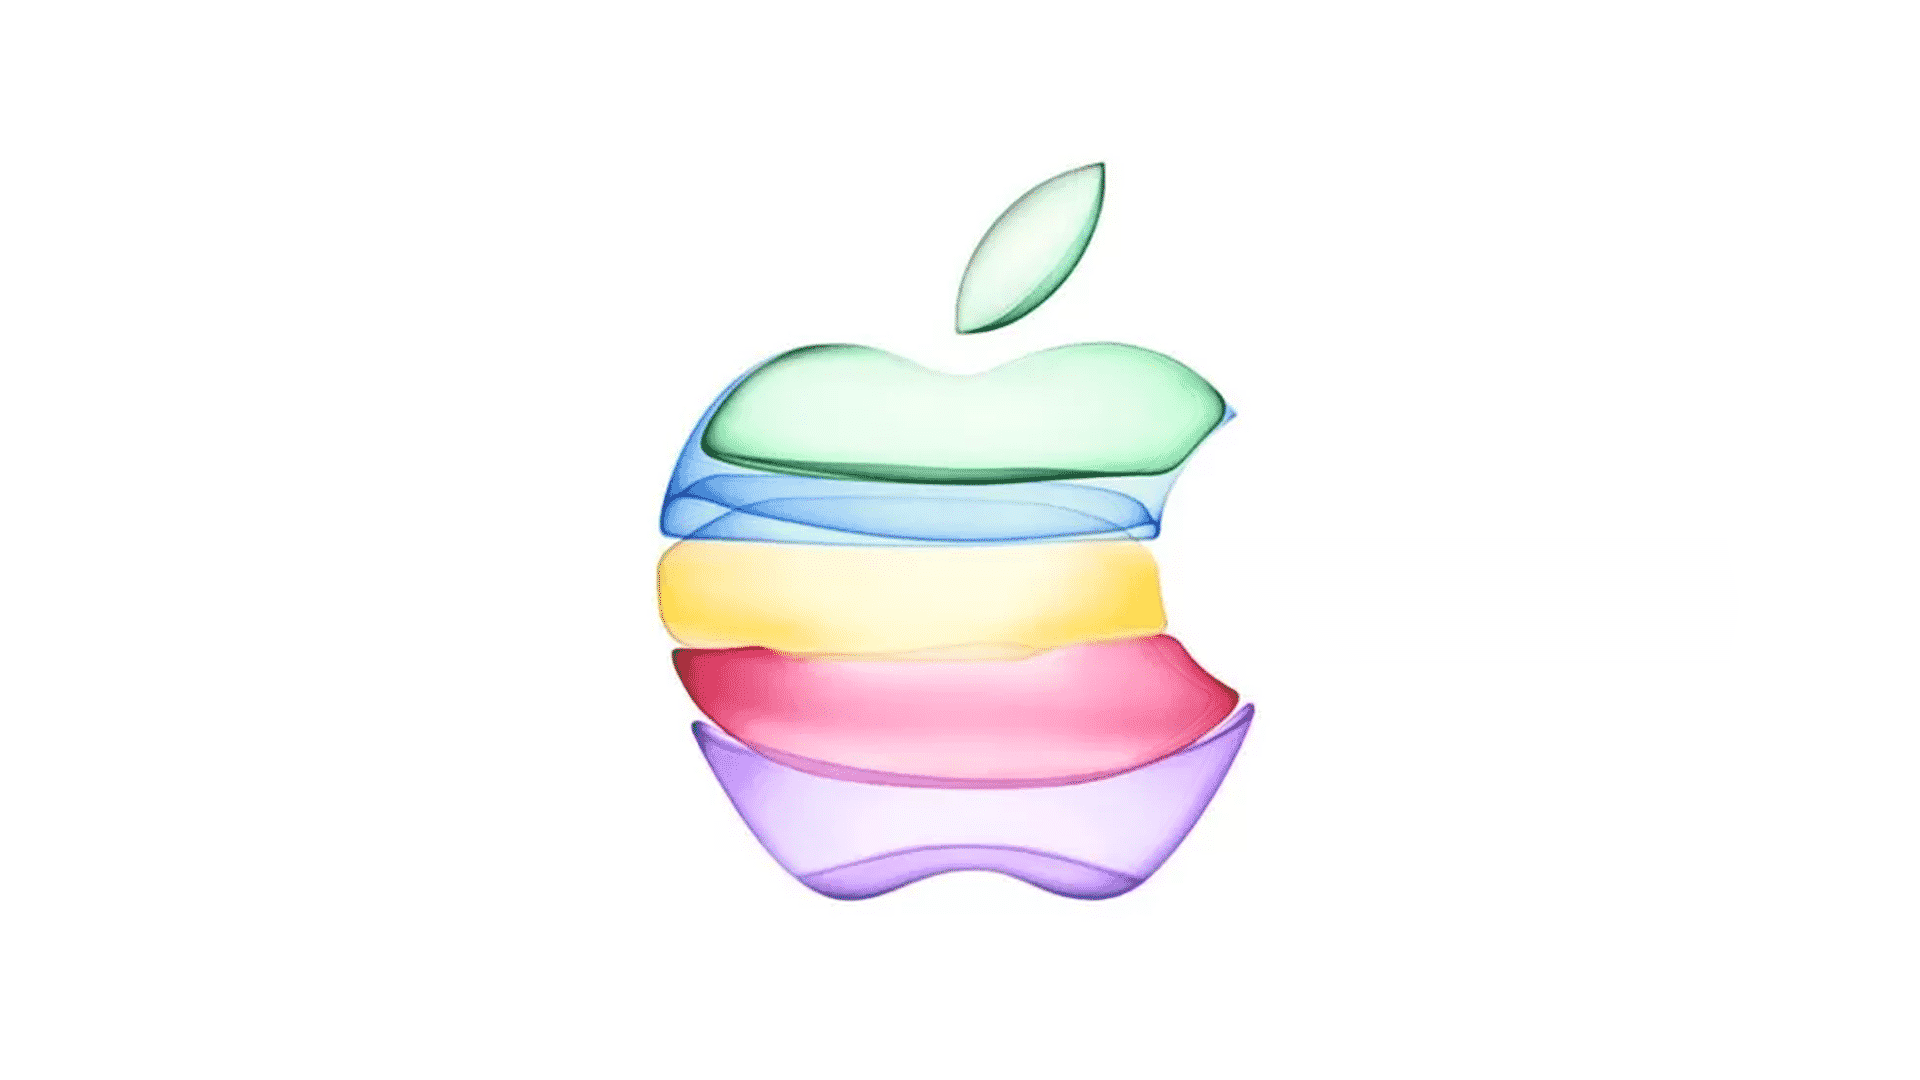 vieme kedy apple predstaví iphone 11